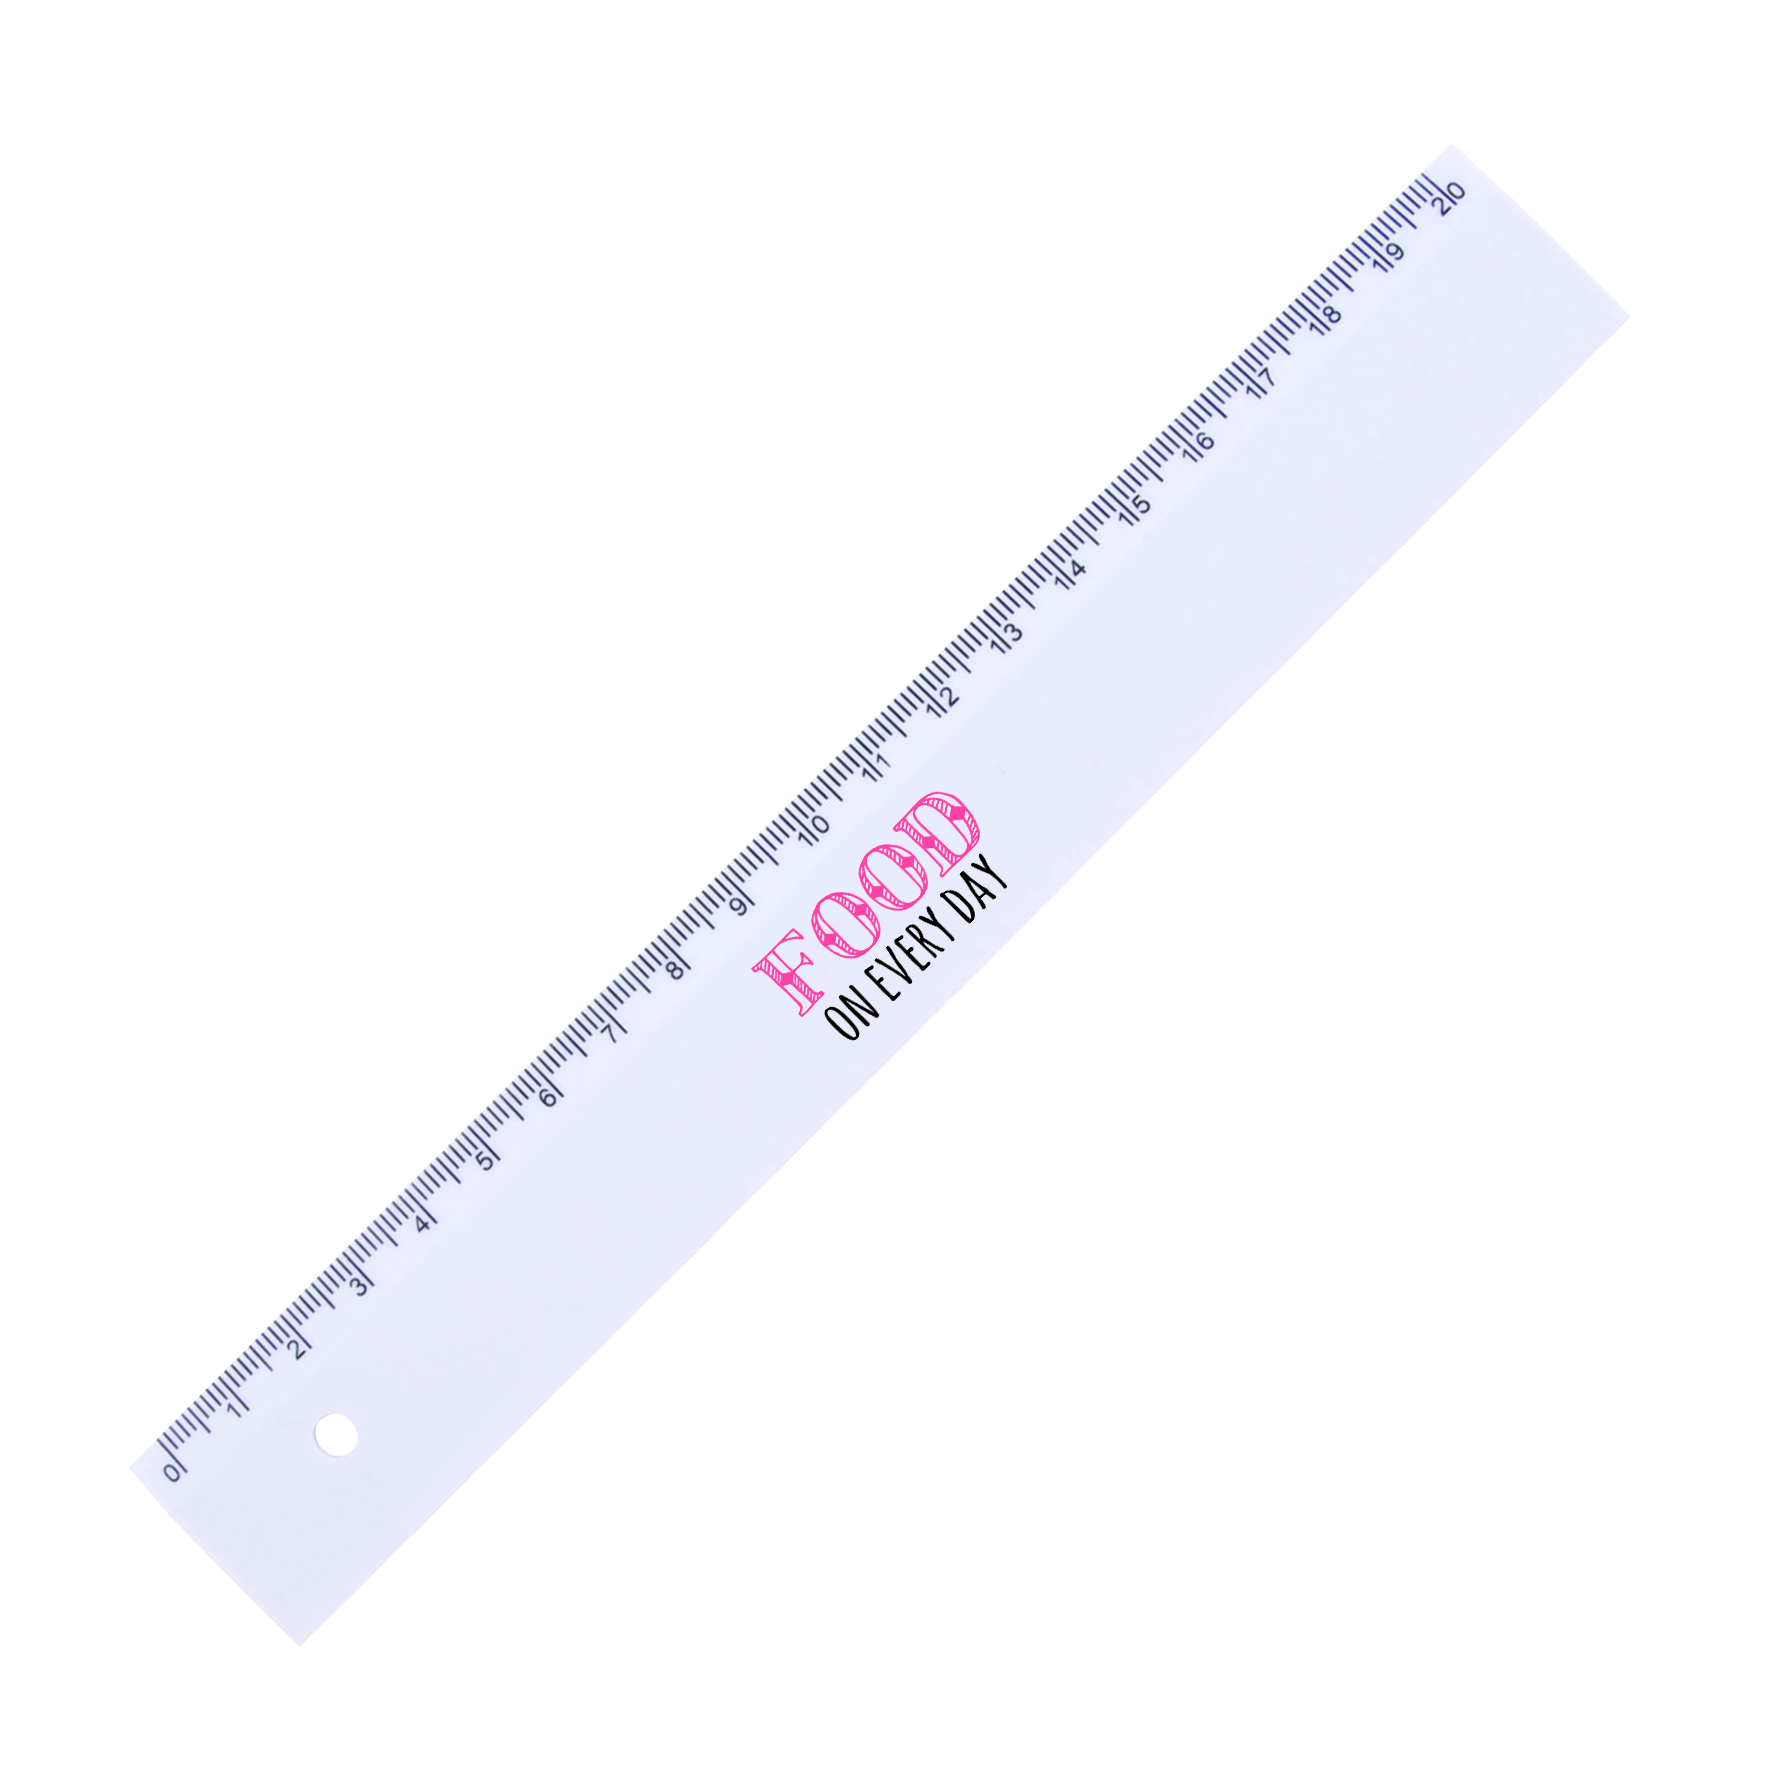 x816201 02 - Plastic ruler (20cm)